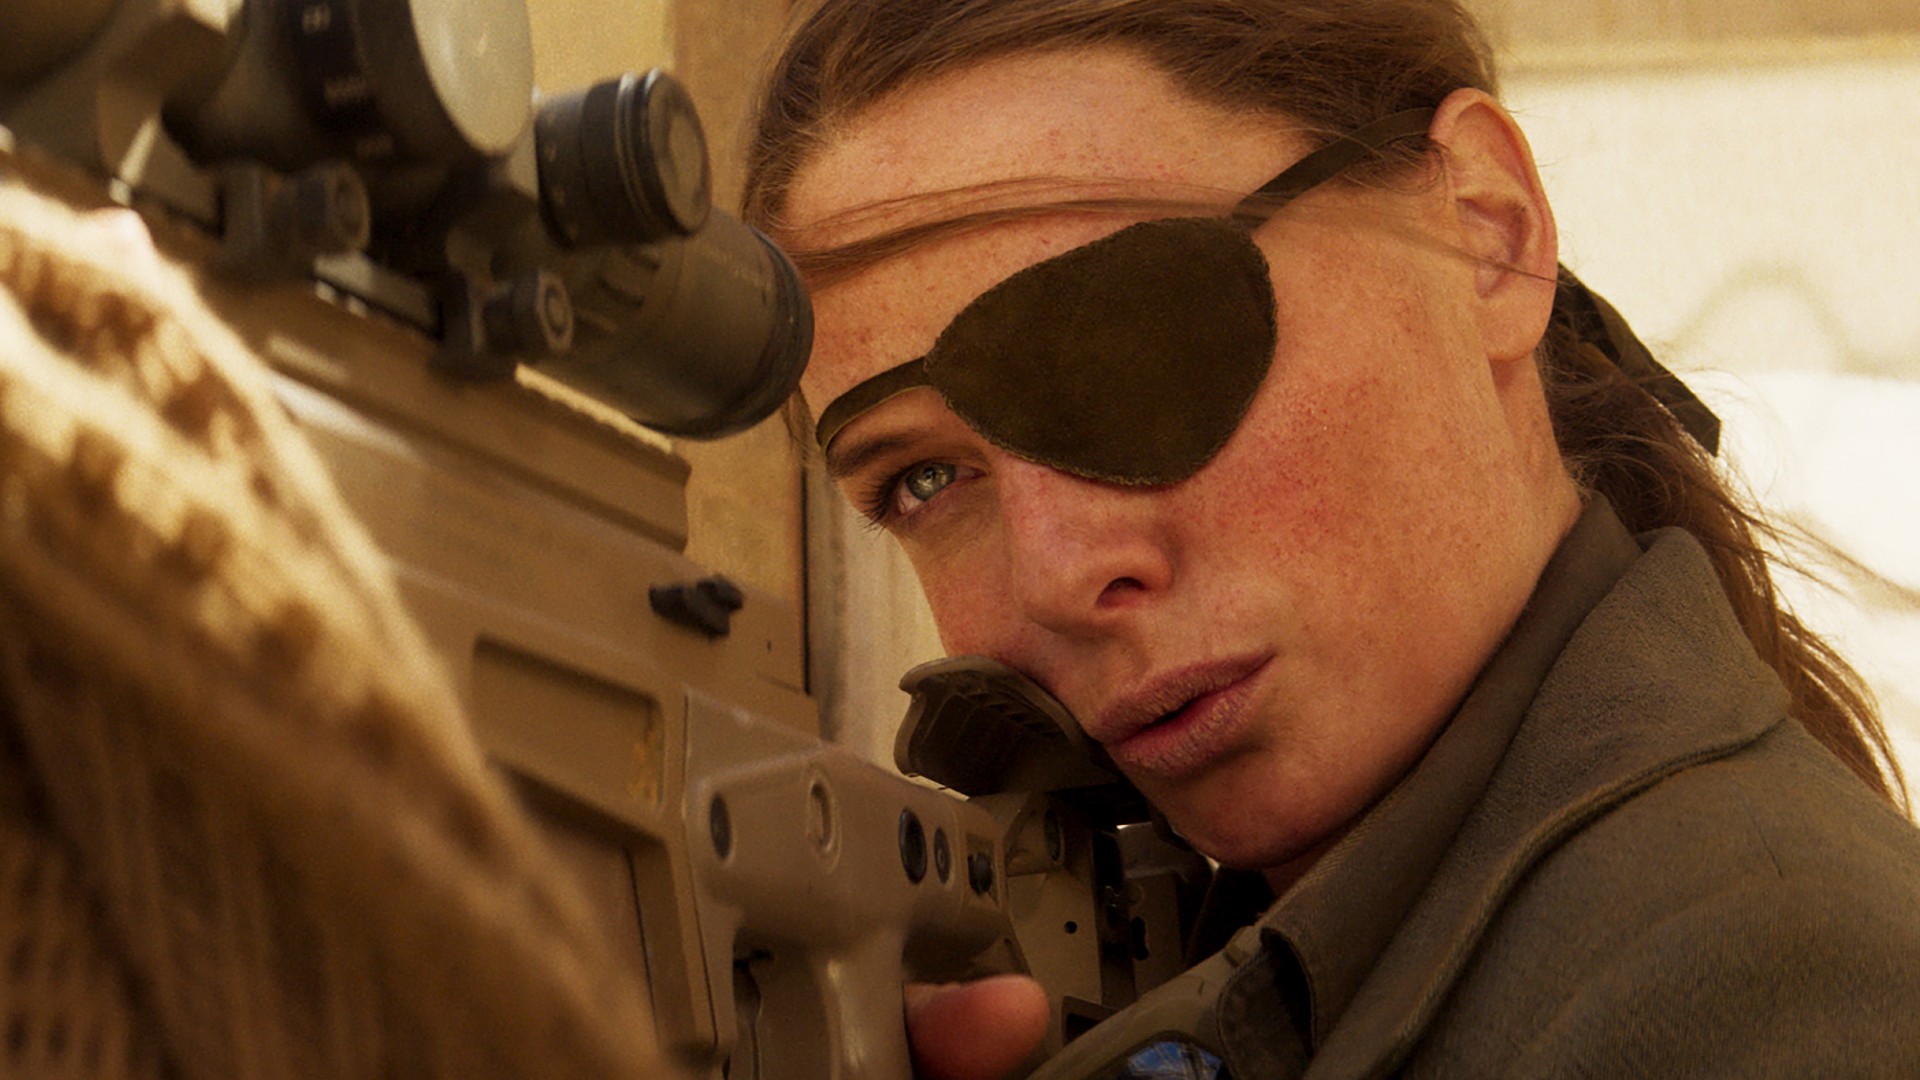 Rebecca Ferguson com um tapa-olho alinha um tiro com seu rifle de precisão.